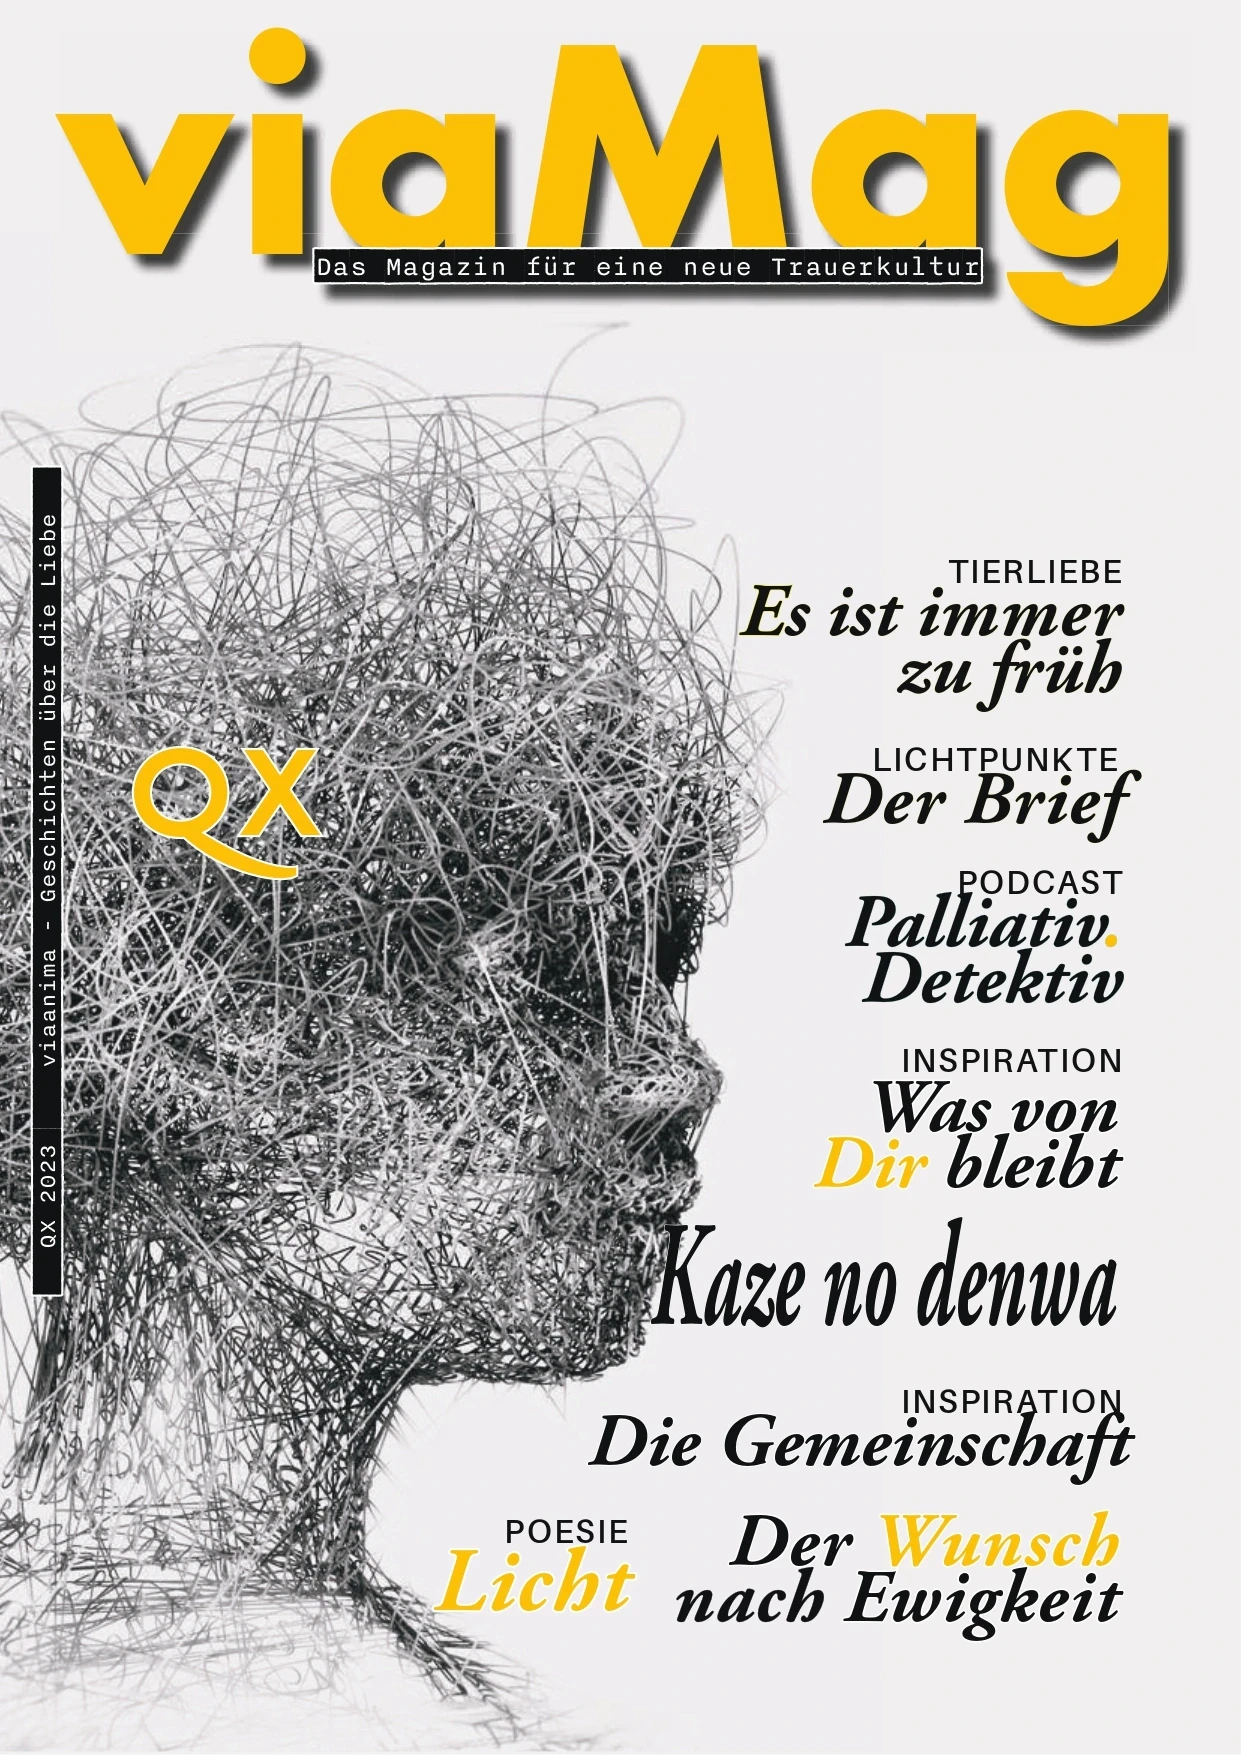 viaMAG Das Magazin der neuen Trauerkultur